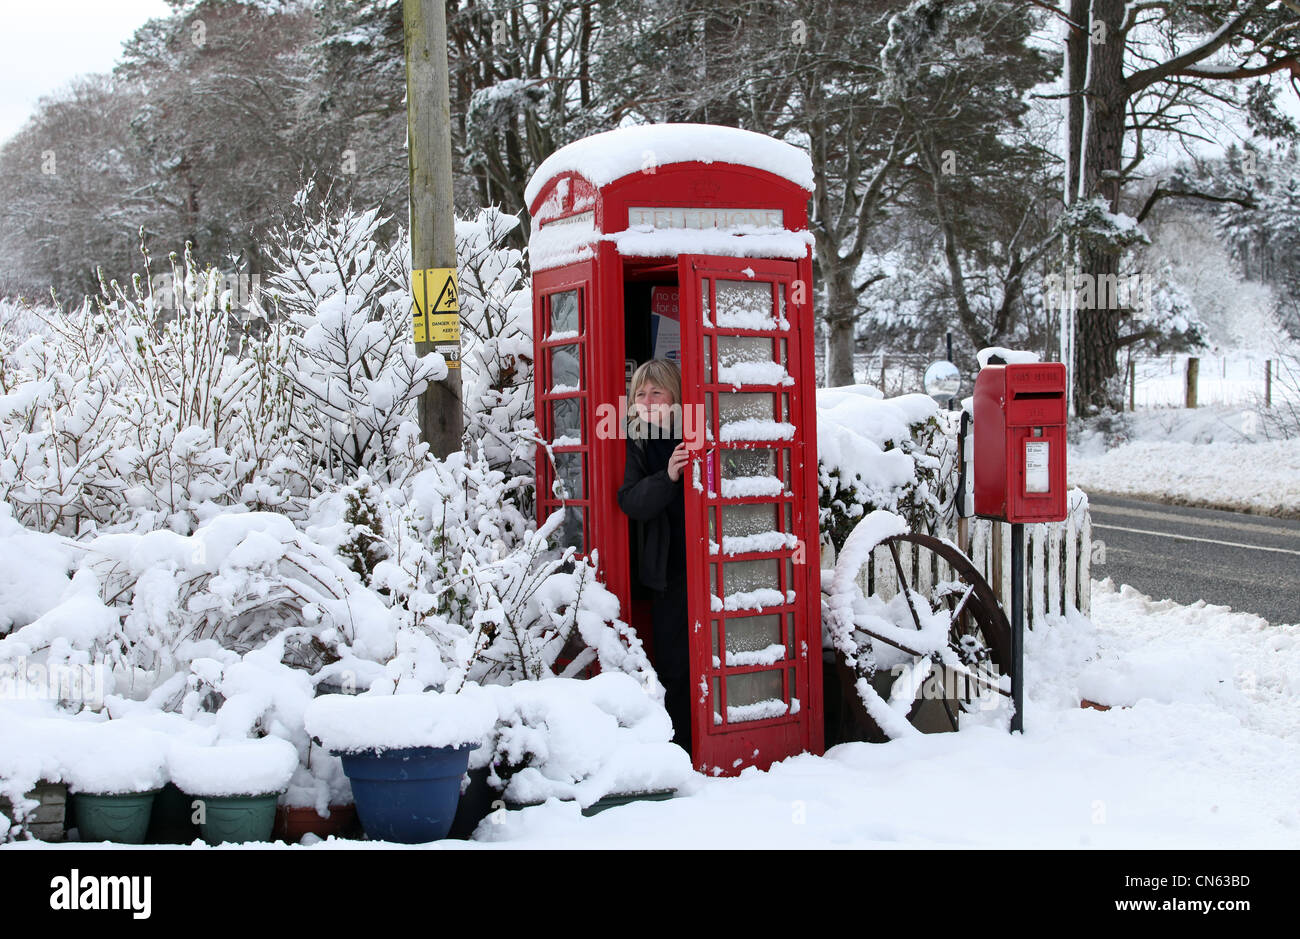 Woman in snow covered rural téléphone public fort en hiver en Ecosse, Royaume-Uni Banque D'Images